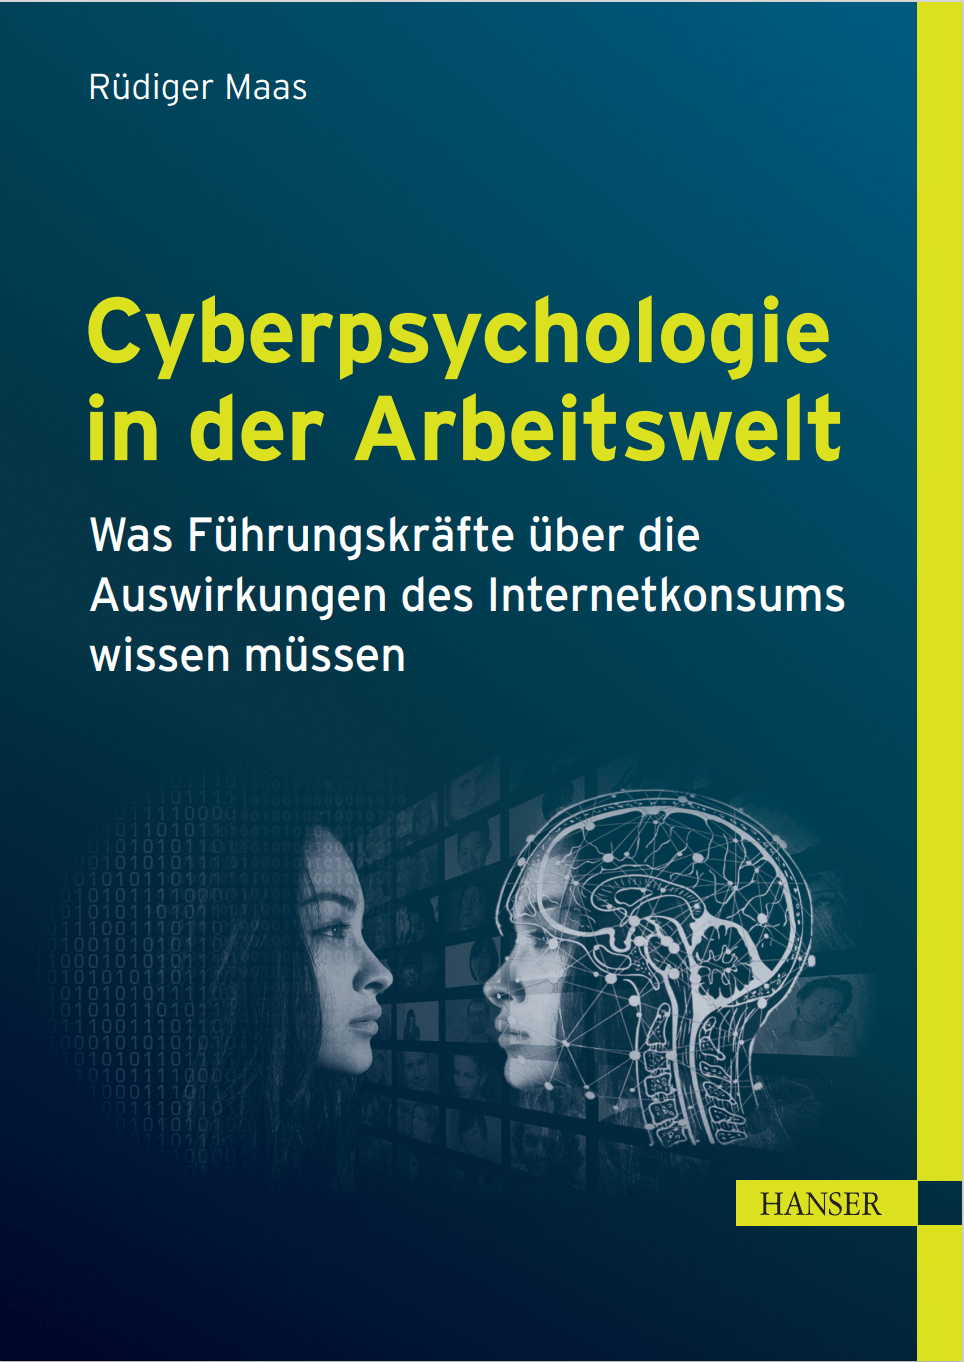 Cyberpsychologie von Fachbuchautor Rüdiger Maas